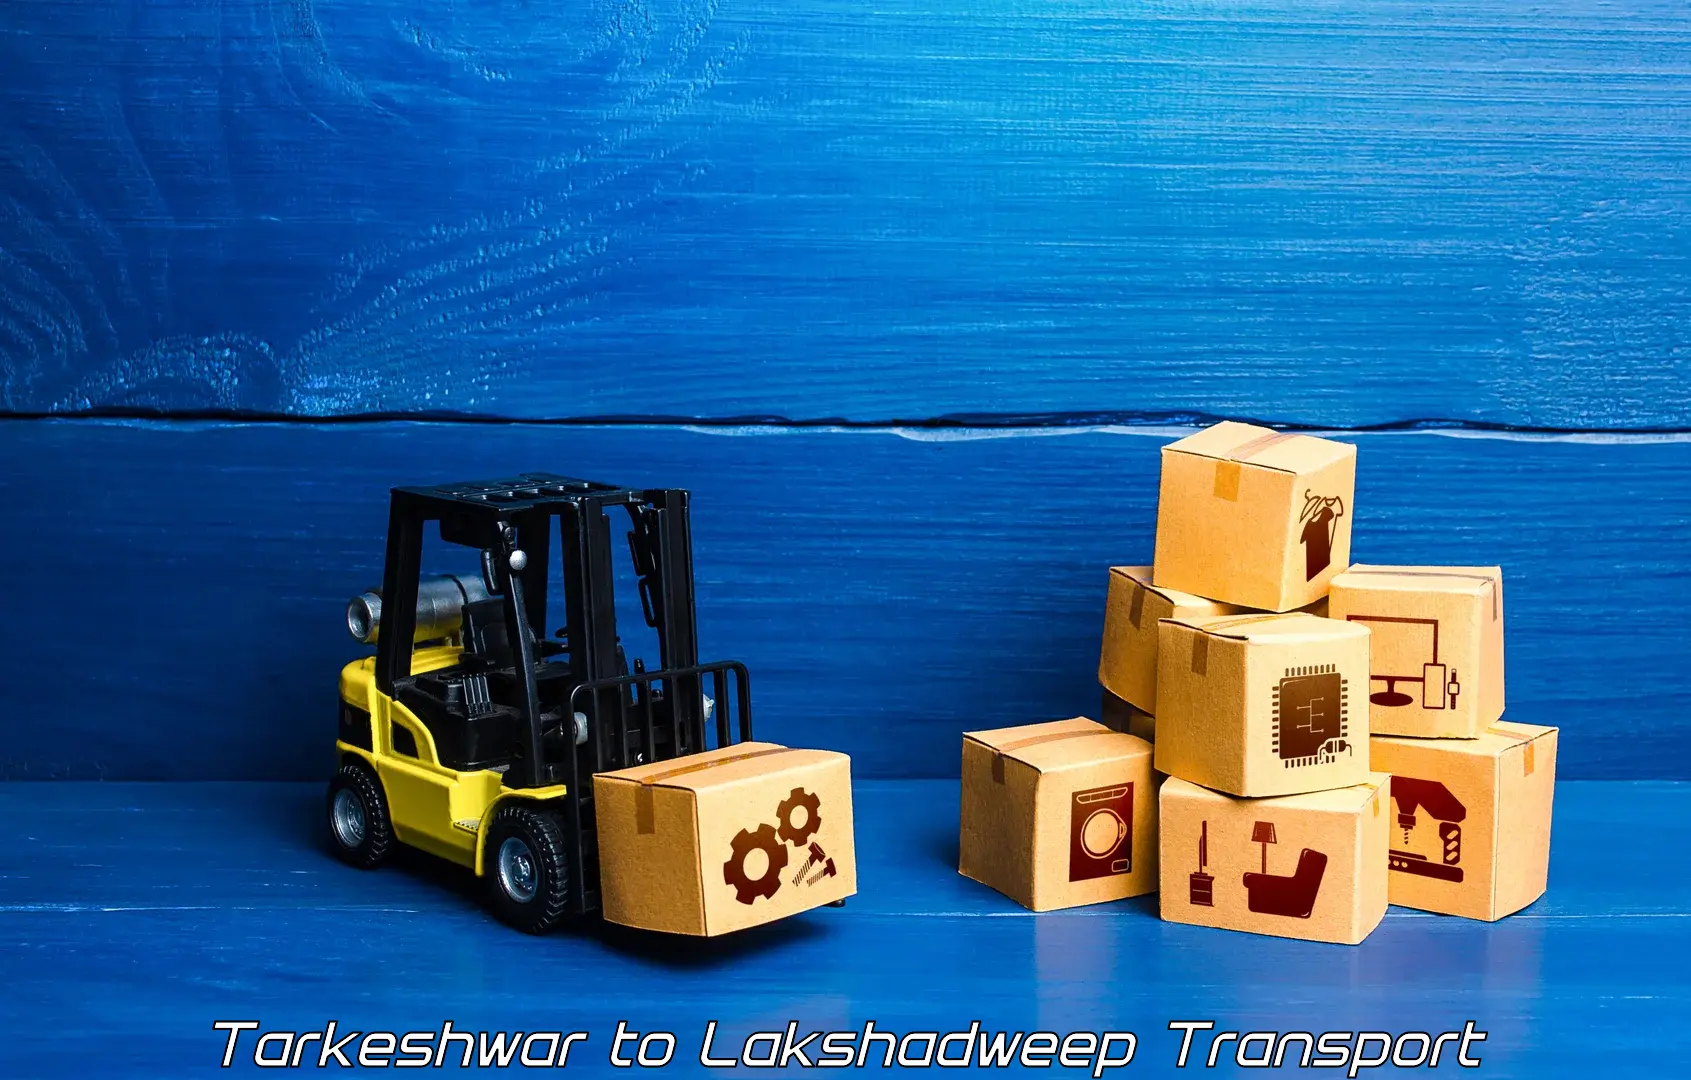 Two wheeler parcel service Tarkeshwar to Lakshadweep